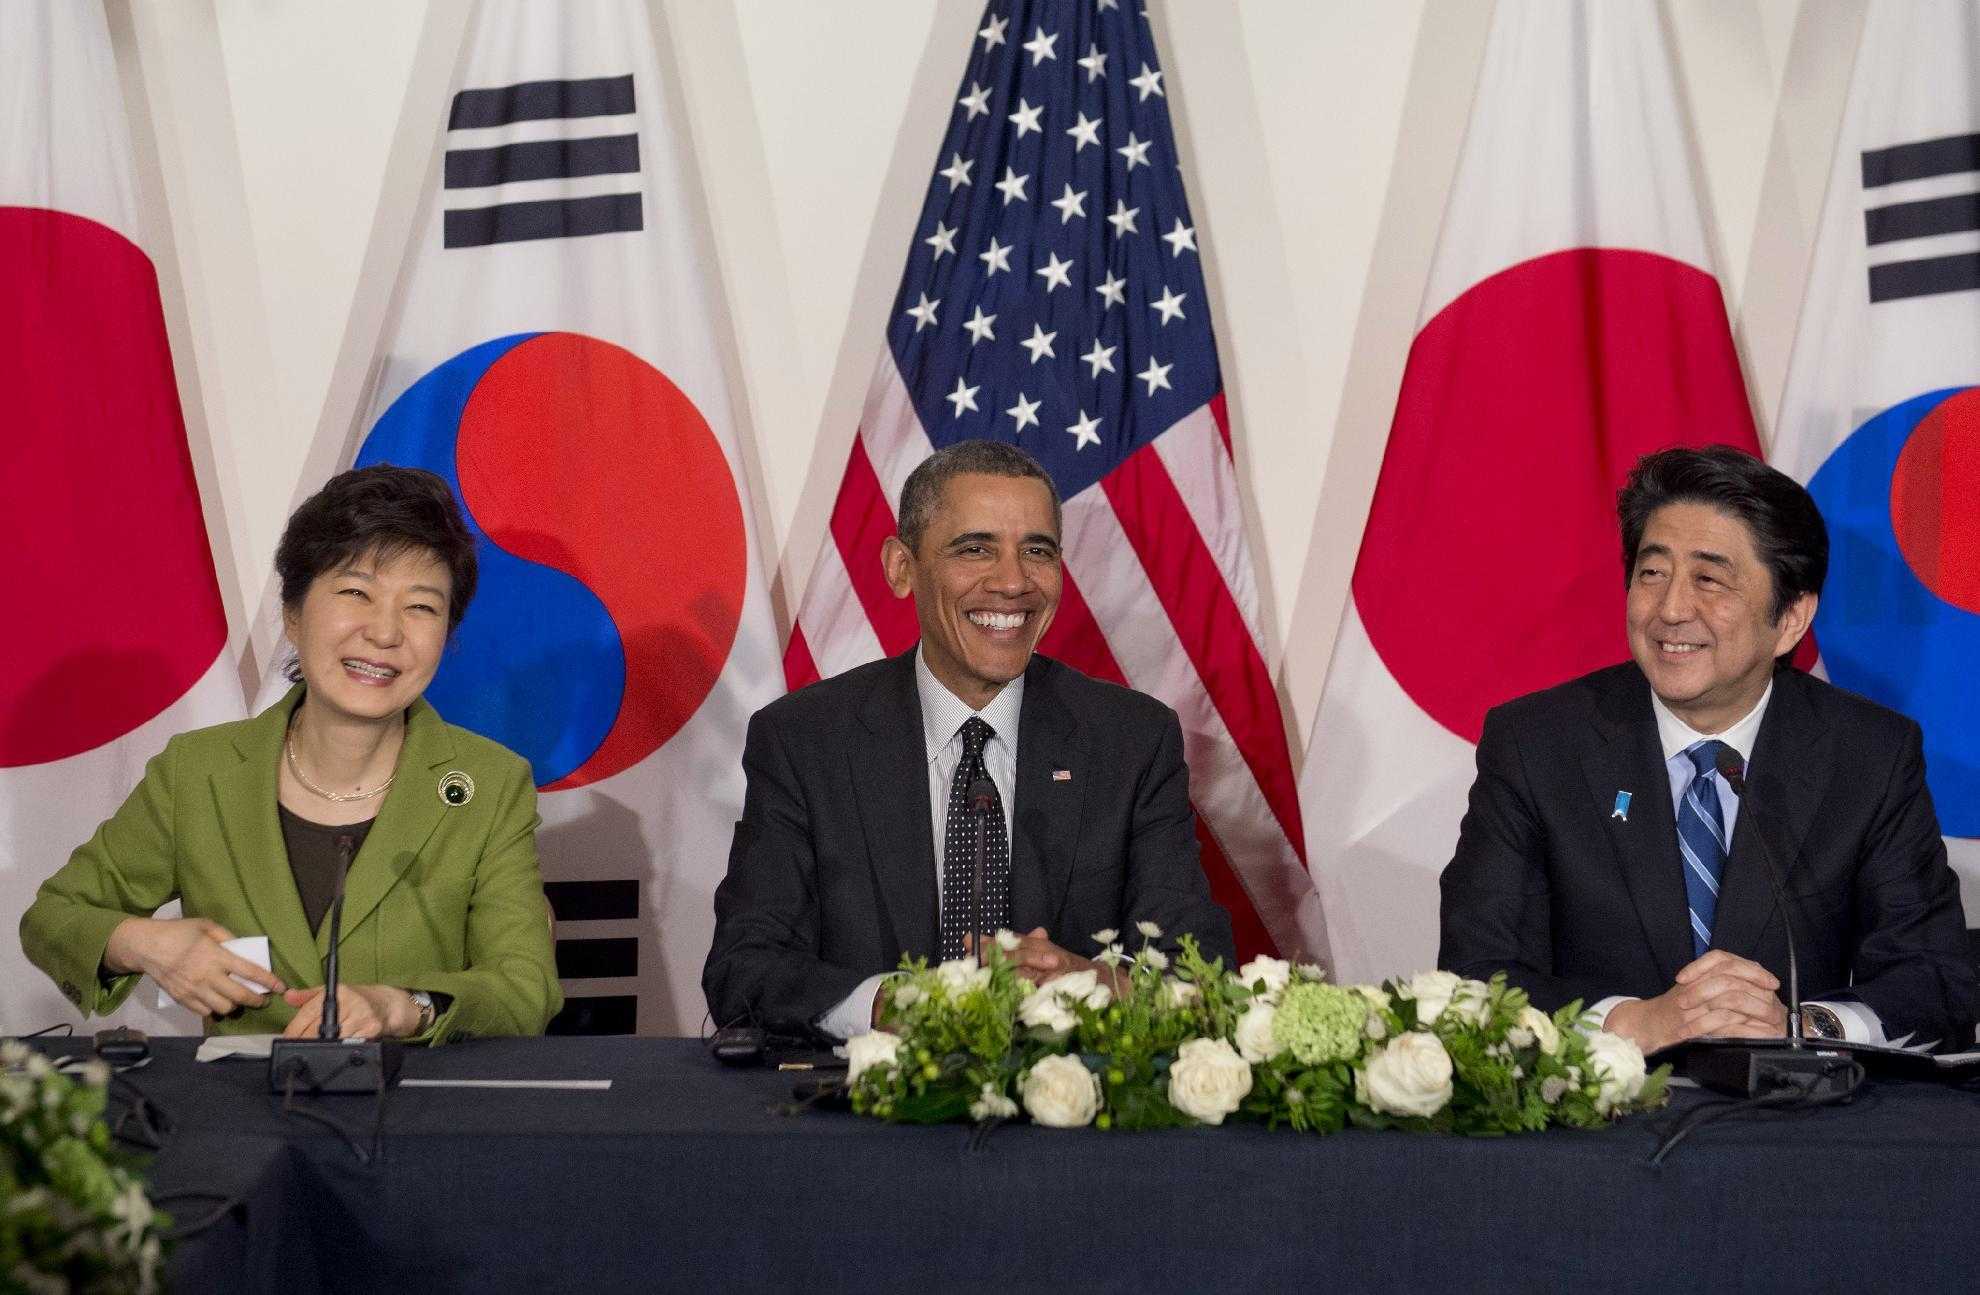 ABD öncülüğünde bölgedeki üç müttefik ülke: Güney Kore, ABD ve Japonya